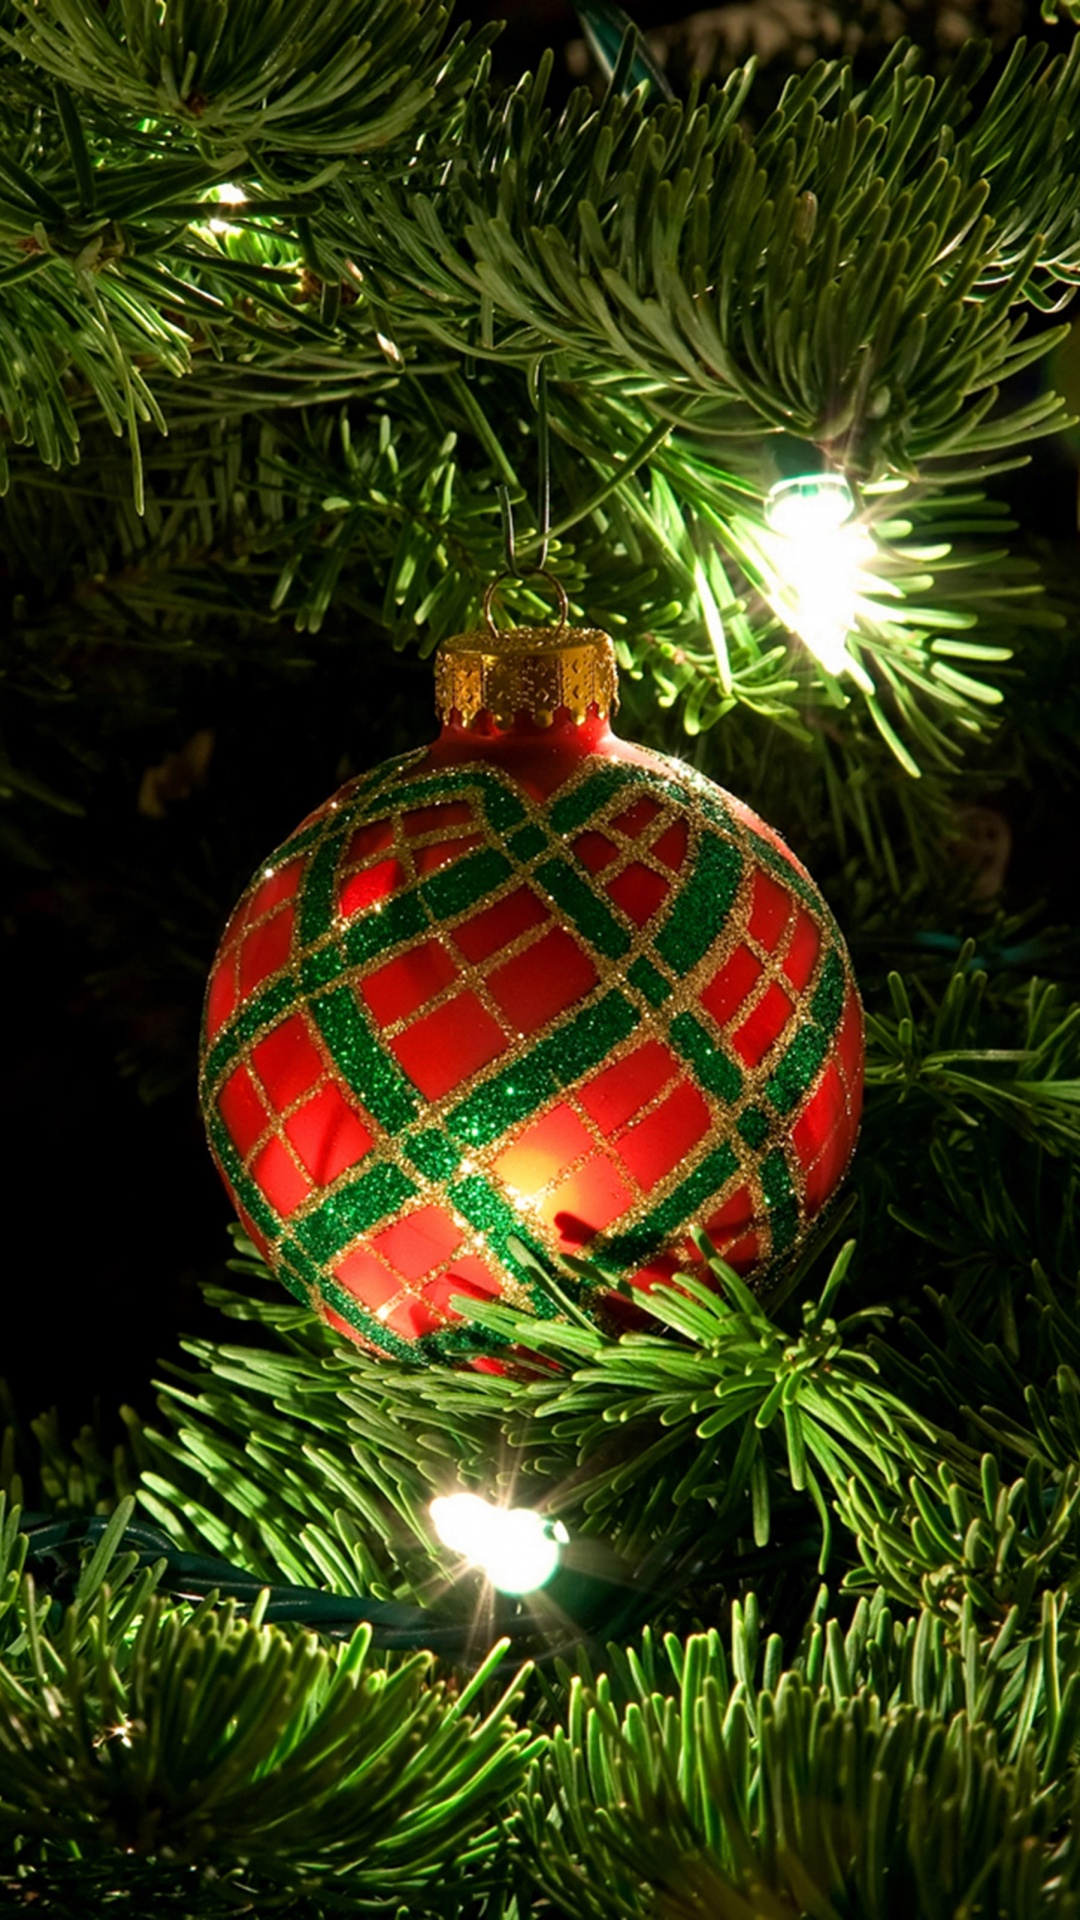 Weihnachten, Christmas Ornament, Weihnachtsdekoration, Weihnachtsbaum, Baum. Wallpaper in 1080x1920 Resolution